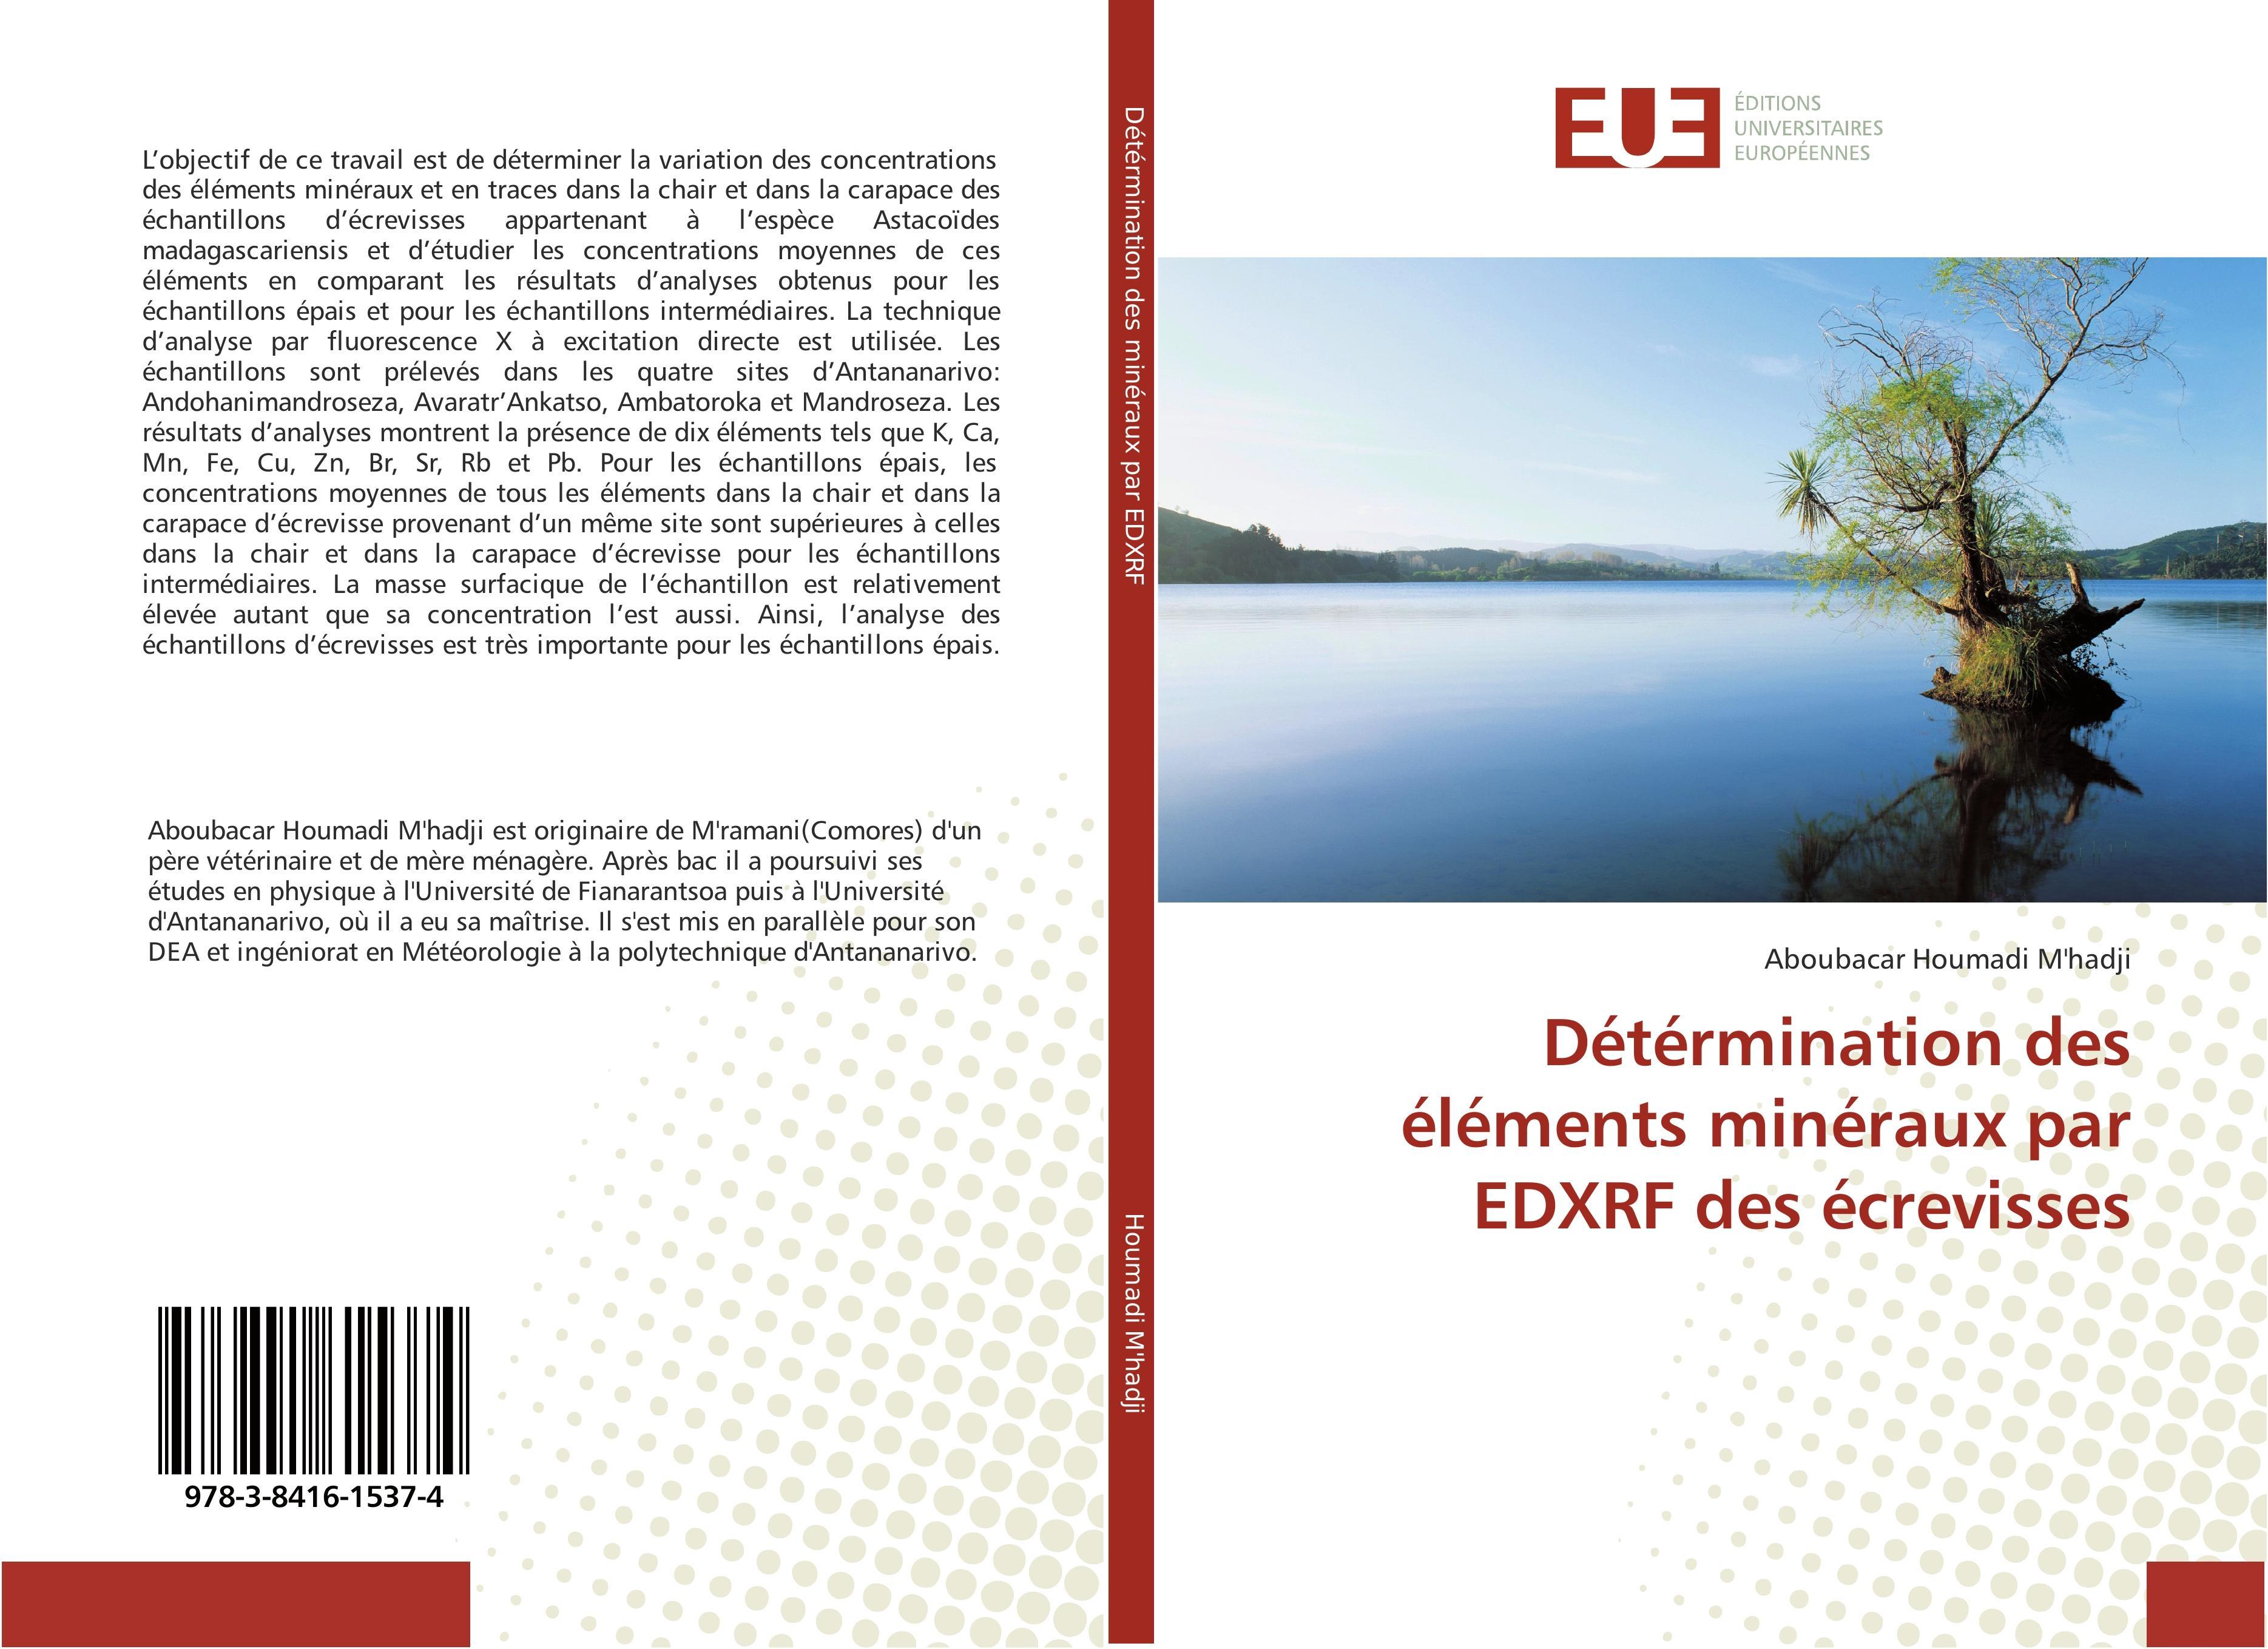 Détérmination des éléments minéraux par EDXRF des écrevisses Aboubacar Houm ... - Bild 1 von 1